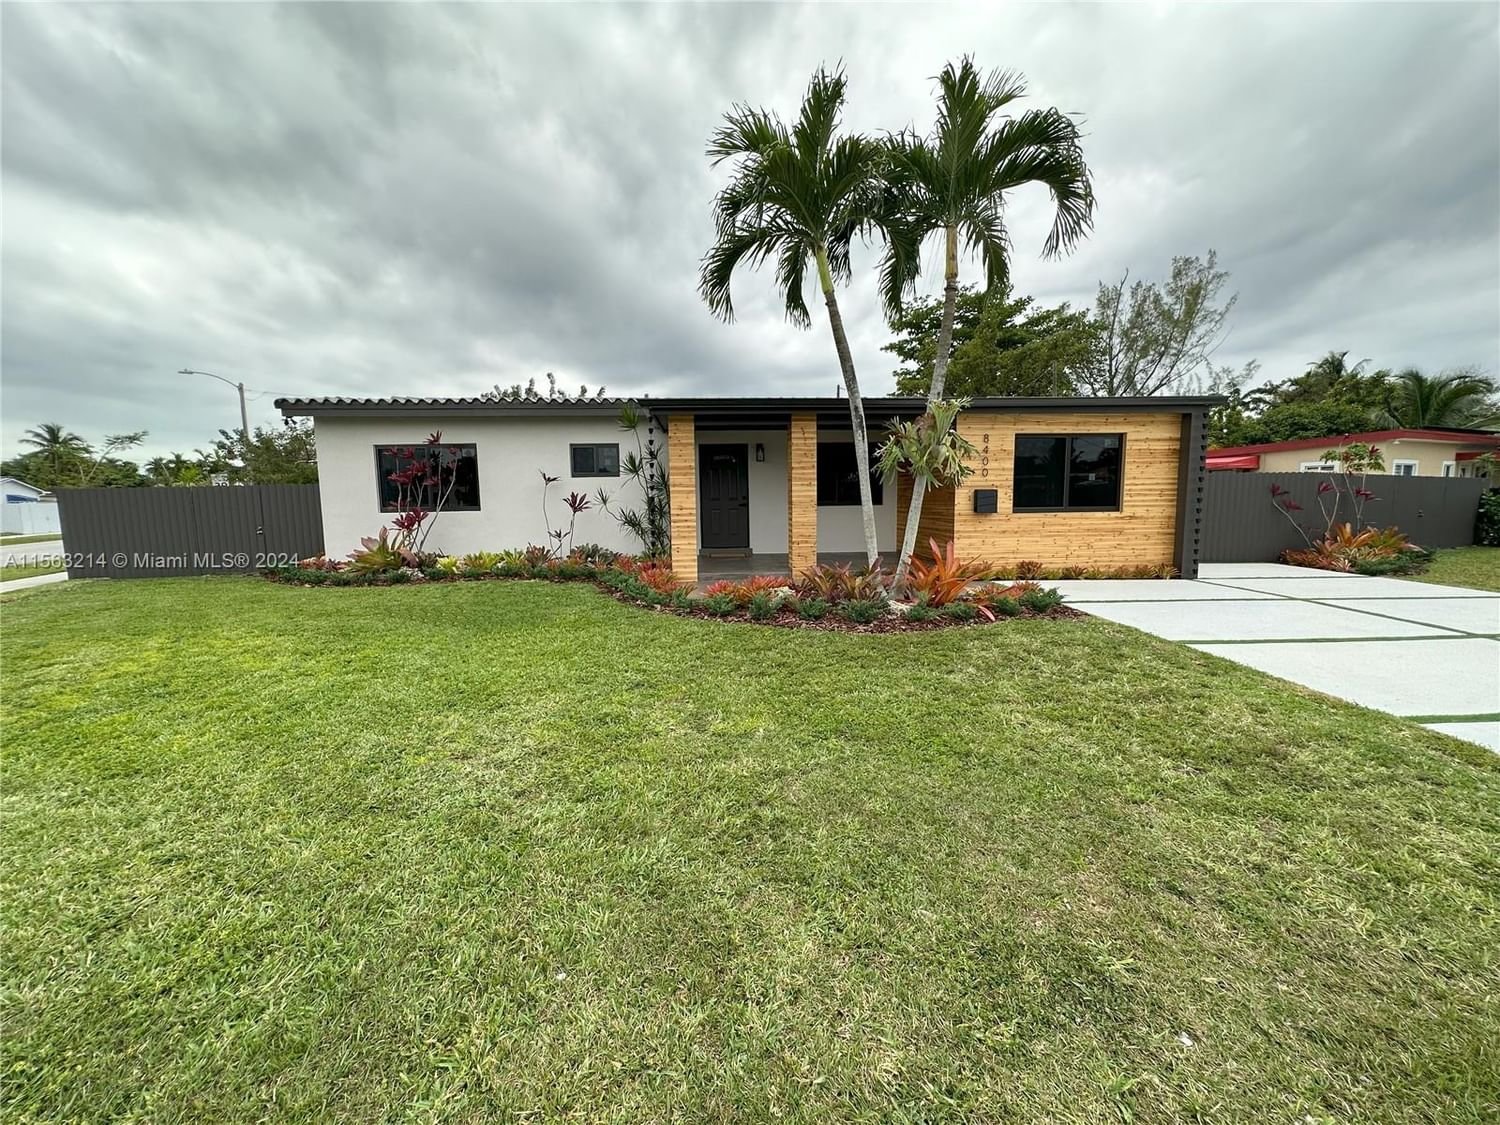 Real estate property located at 8400 46th St, Miami-Dade County, GLORE ESTATES ADDITION, Miami, FL